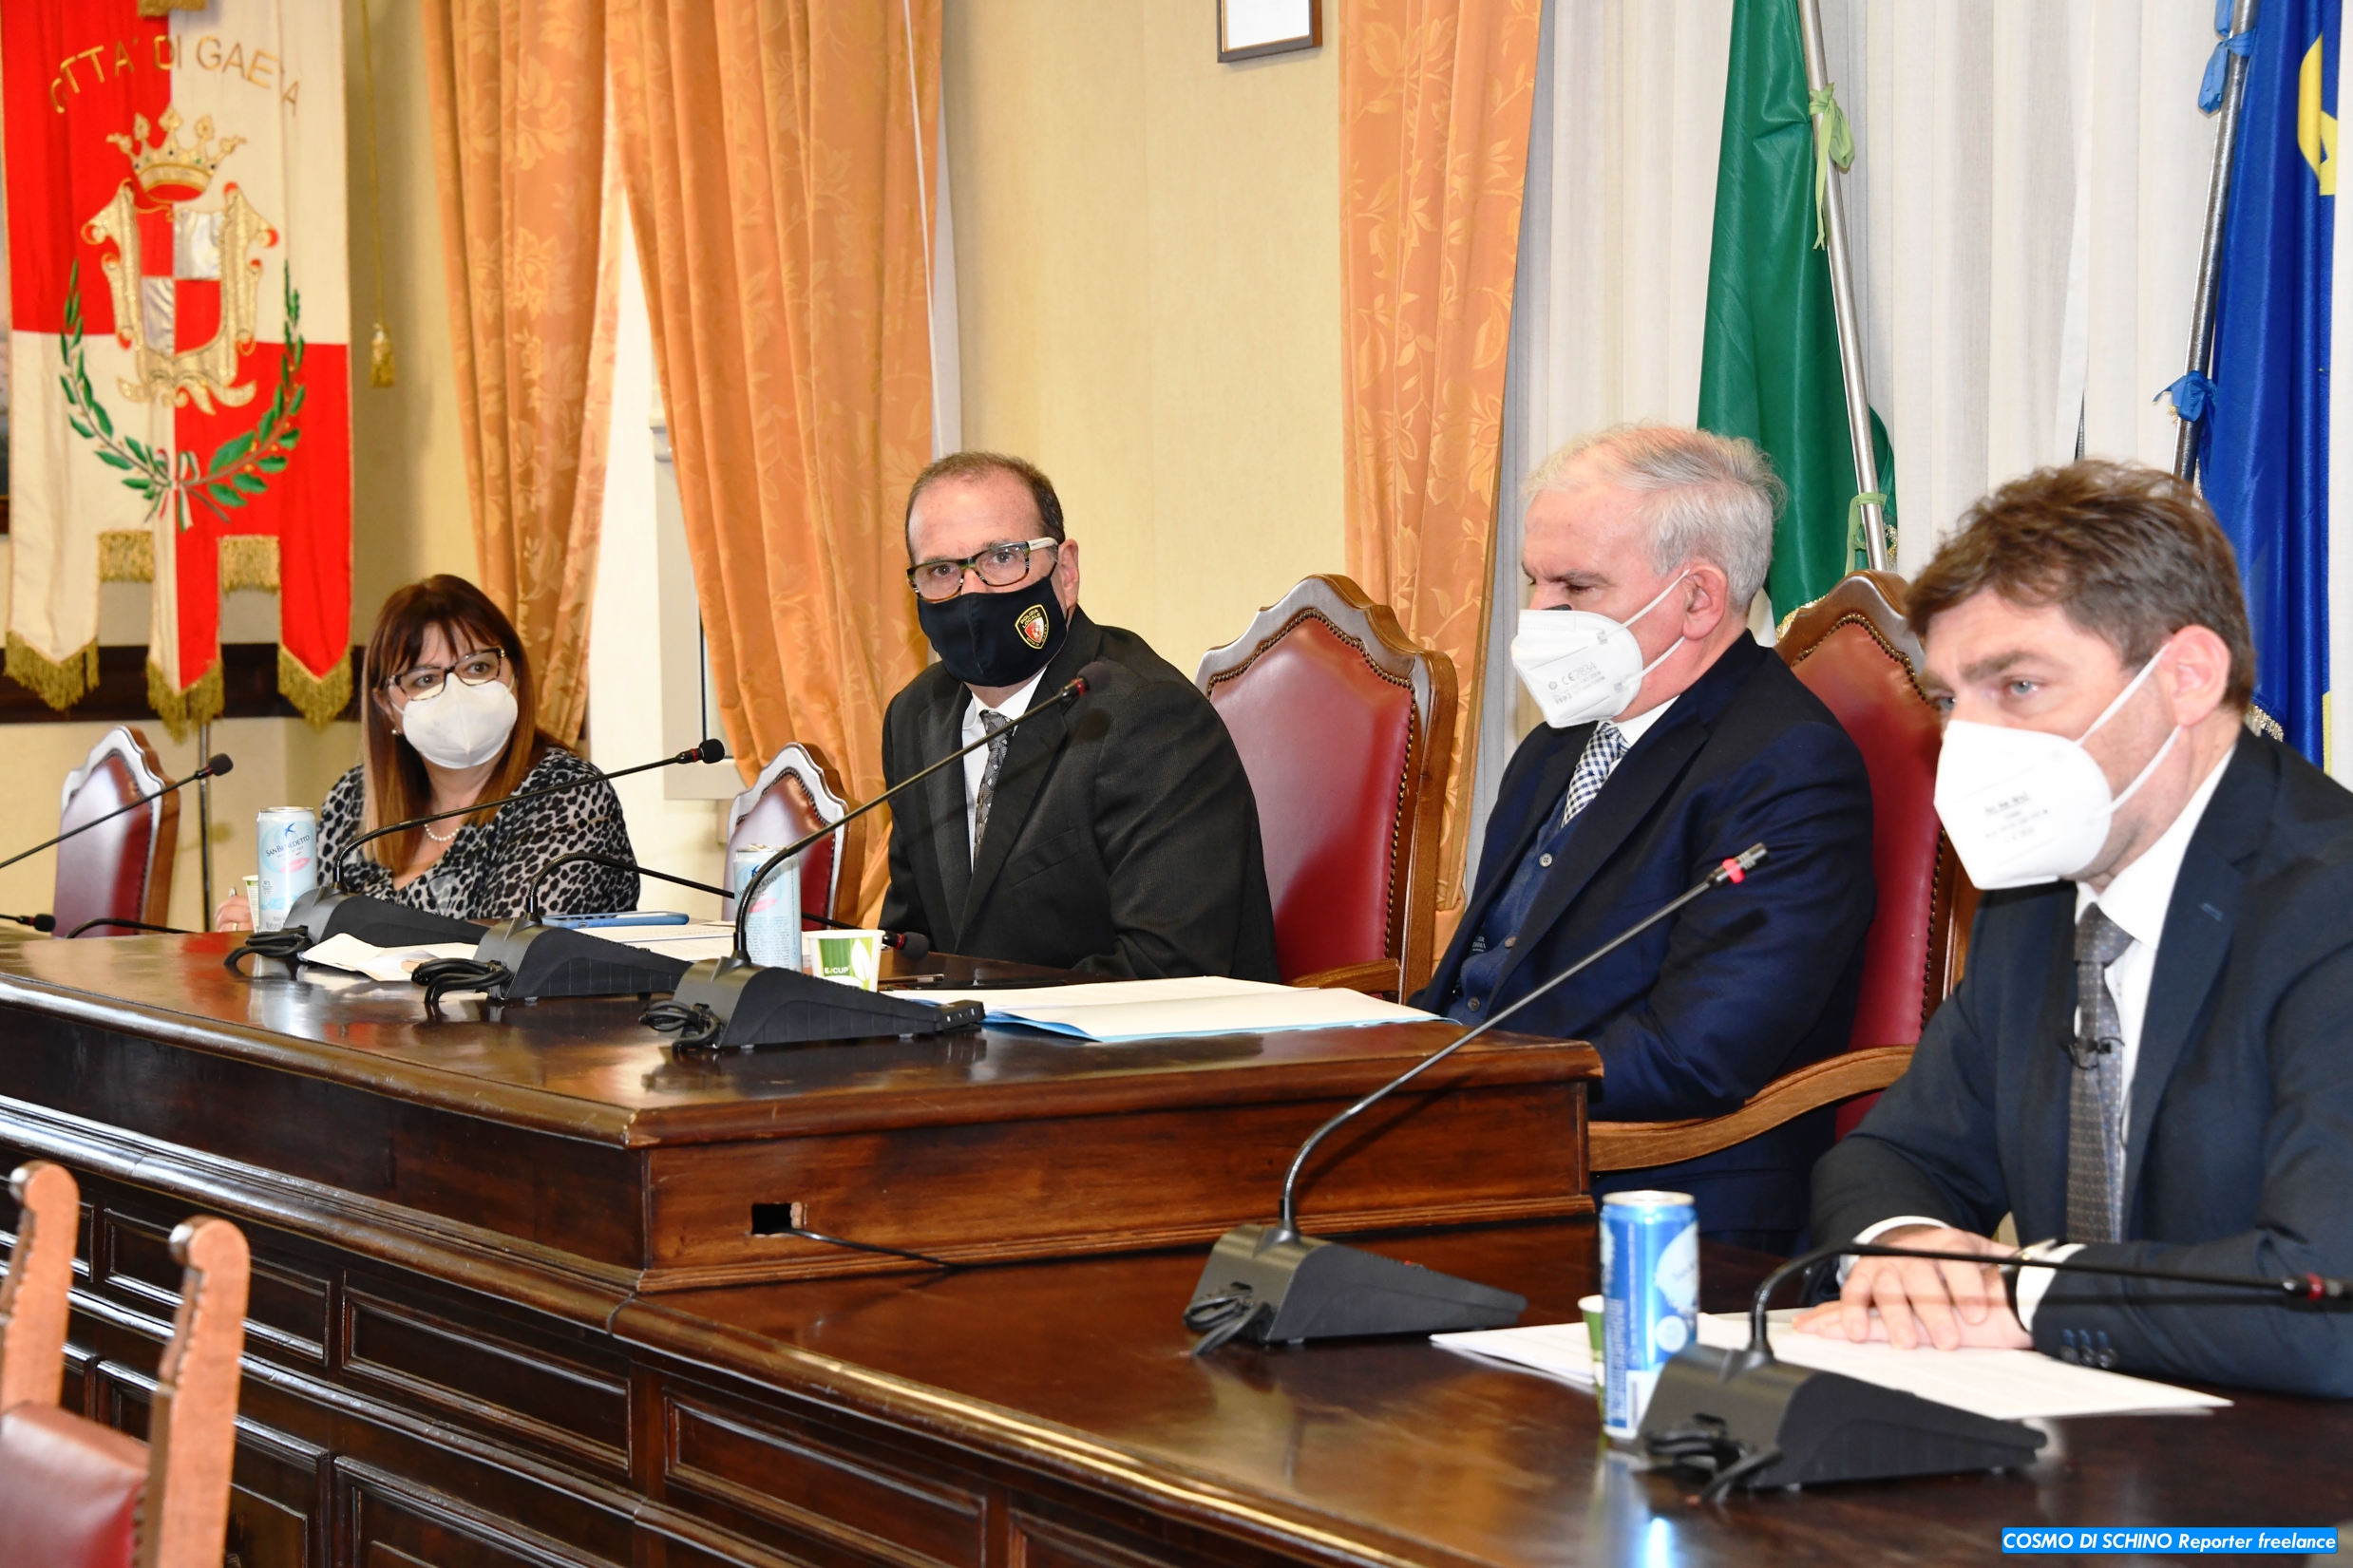 Il Prefetto di Latina Maurizio Falco in visita ufficiale in città in occasione della presentazione del vademecum Superbonus 110%  a cura dell'ANCE...